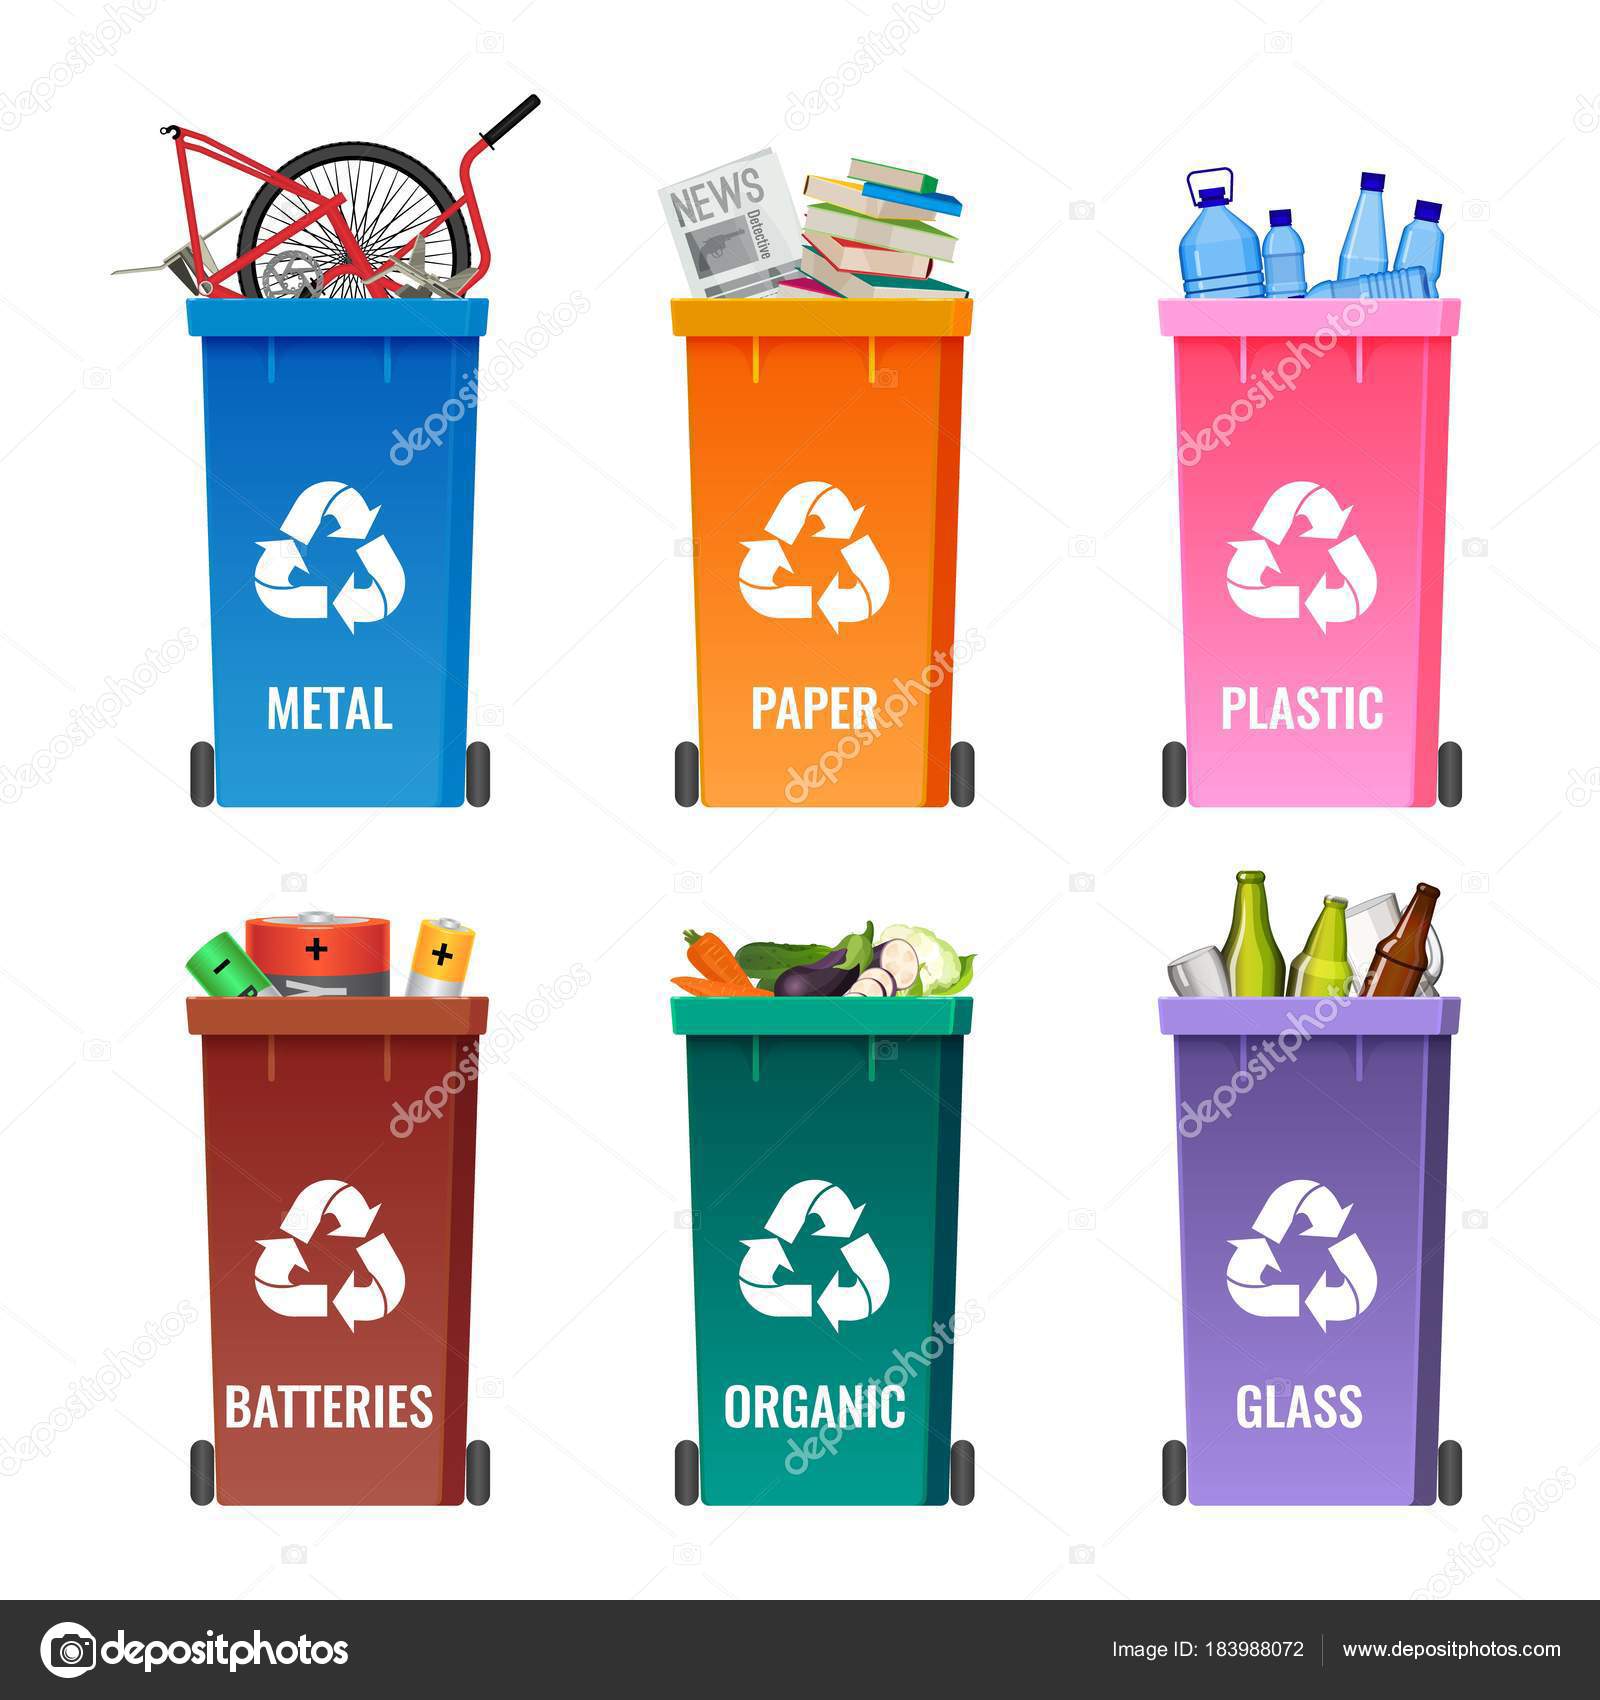 Container-Set zur Mülltrennung blau für Metall, orange Papier  Stock-Vektorgrafik von ©godruma 183988072